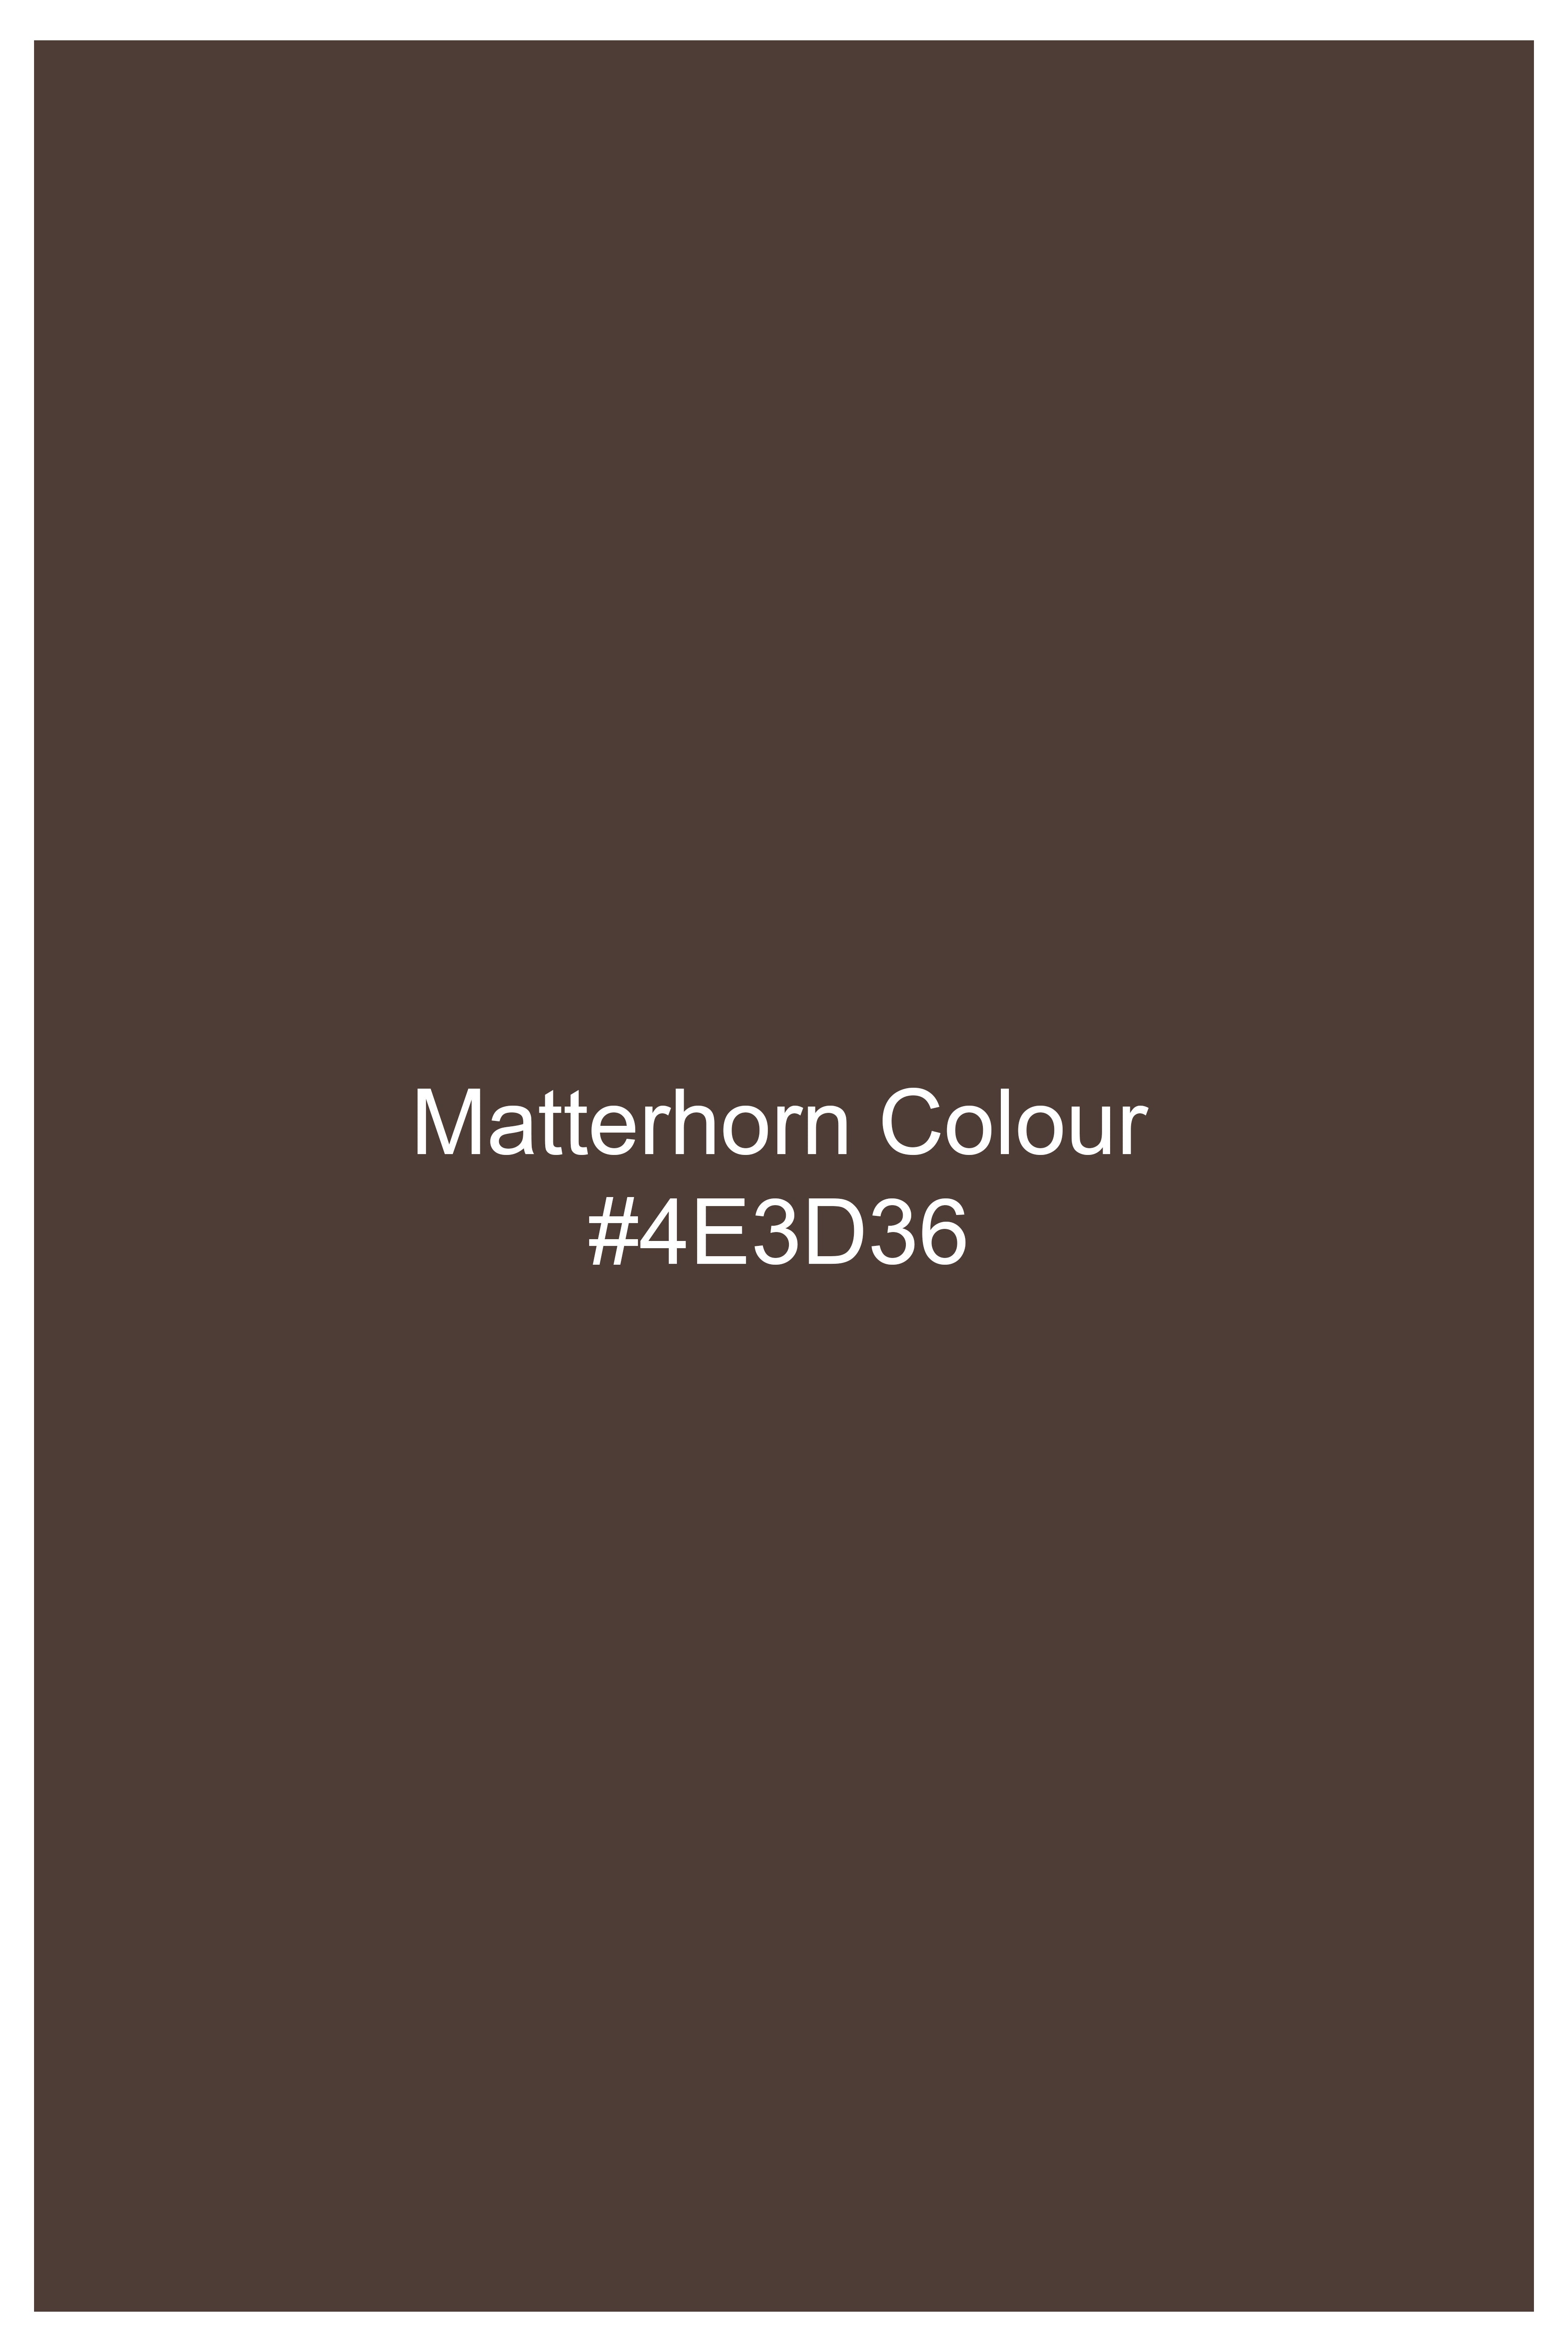 Matterhorn Brown Subtle Checkered Wool Rich Blazer BL3122-SBP-36, BL3122-SBP-38, BL3122-SBP-40, BL3122-SBP-42, BL3122-SBP-44, BL3122-SBP-46, BL3122-SBP-48, BL3122-SBP-50, BL3122-SBP-52, BL3122-SBP-54, BL3122-SBP-56, BL3122-SBP-58, BL3122-SBP-60